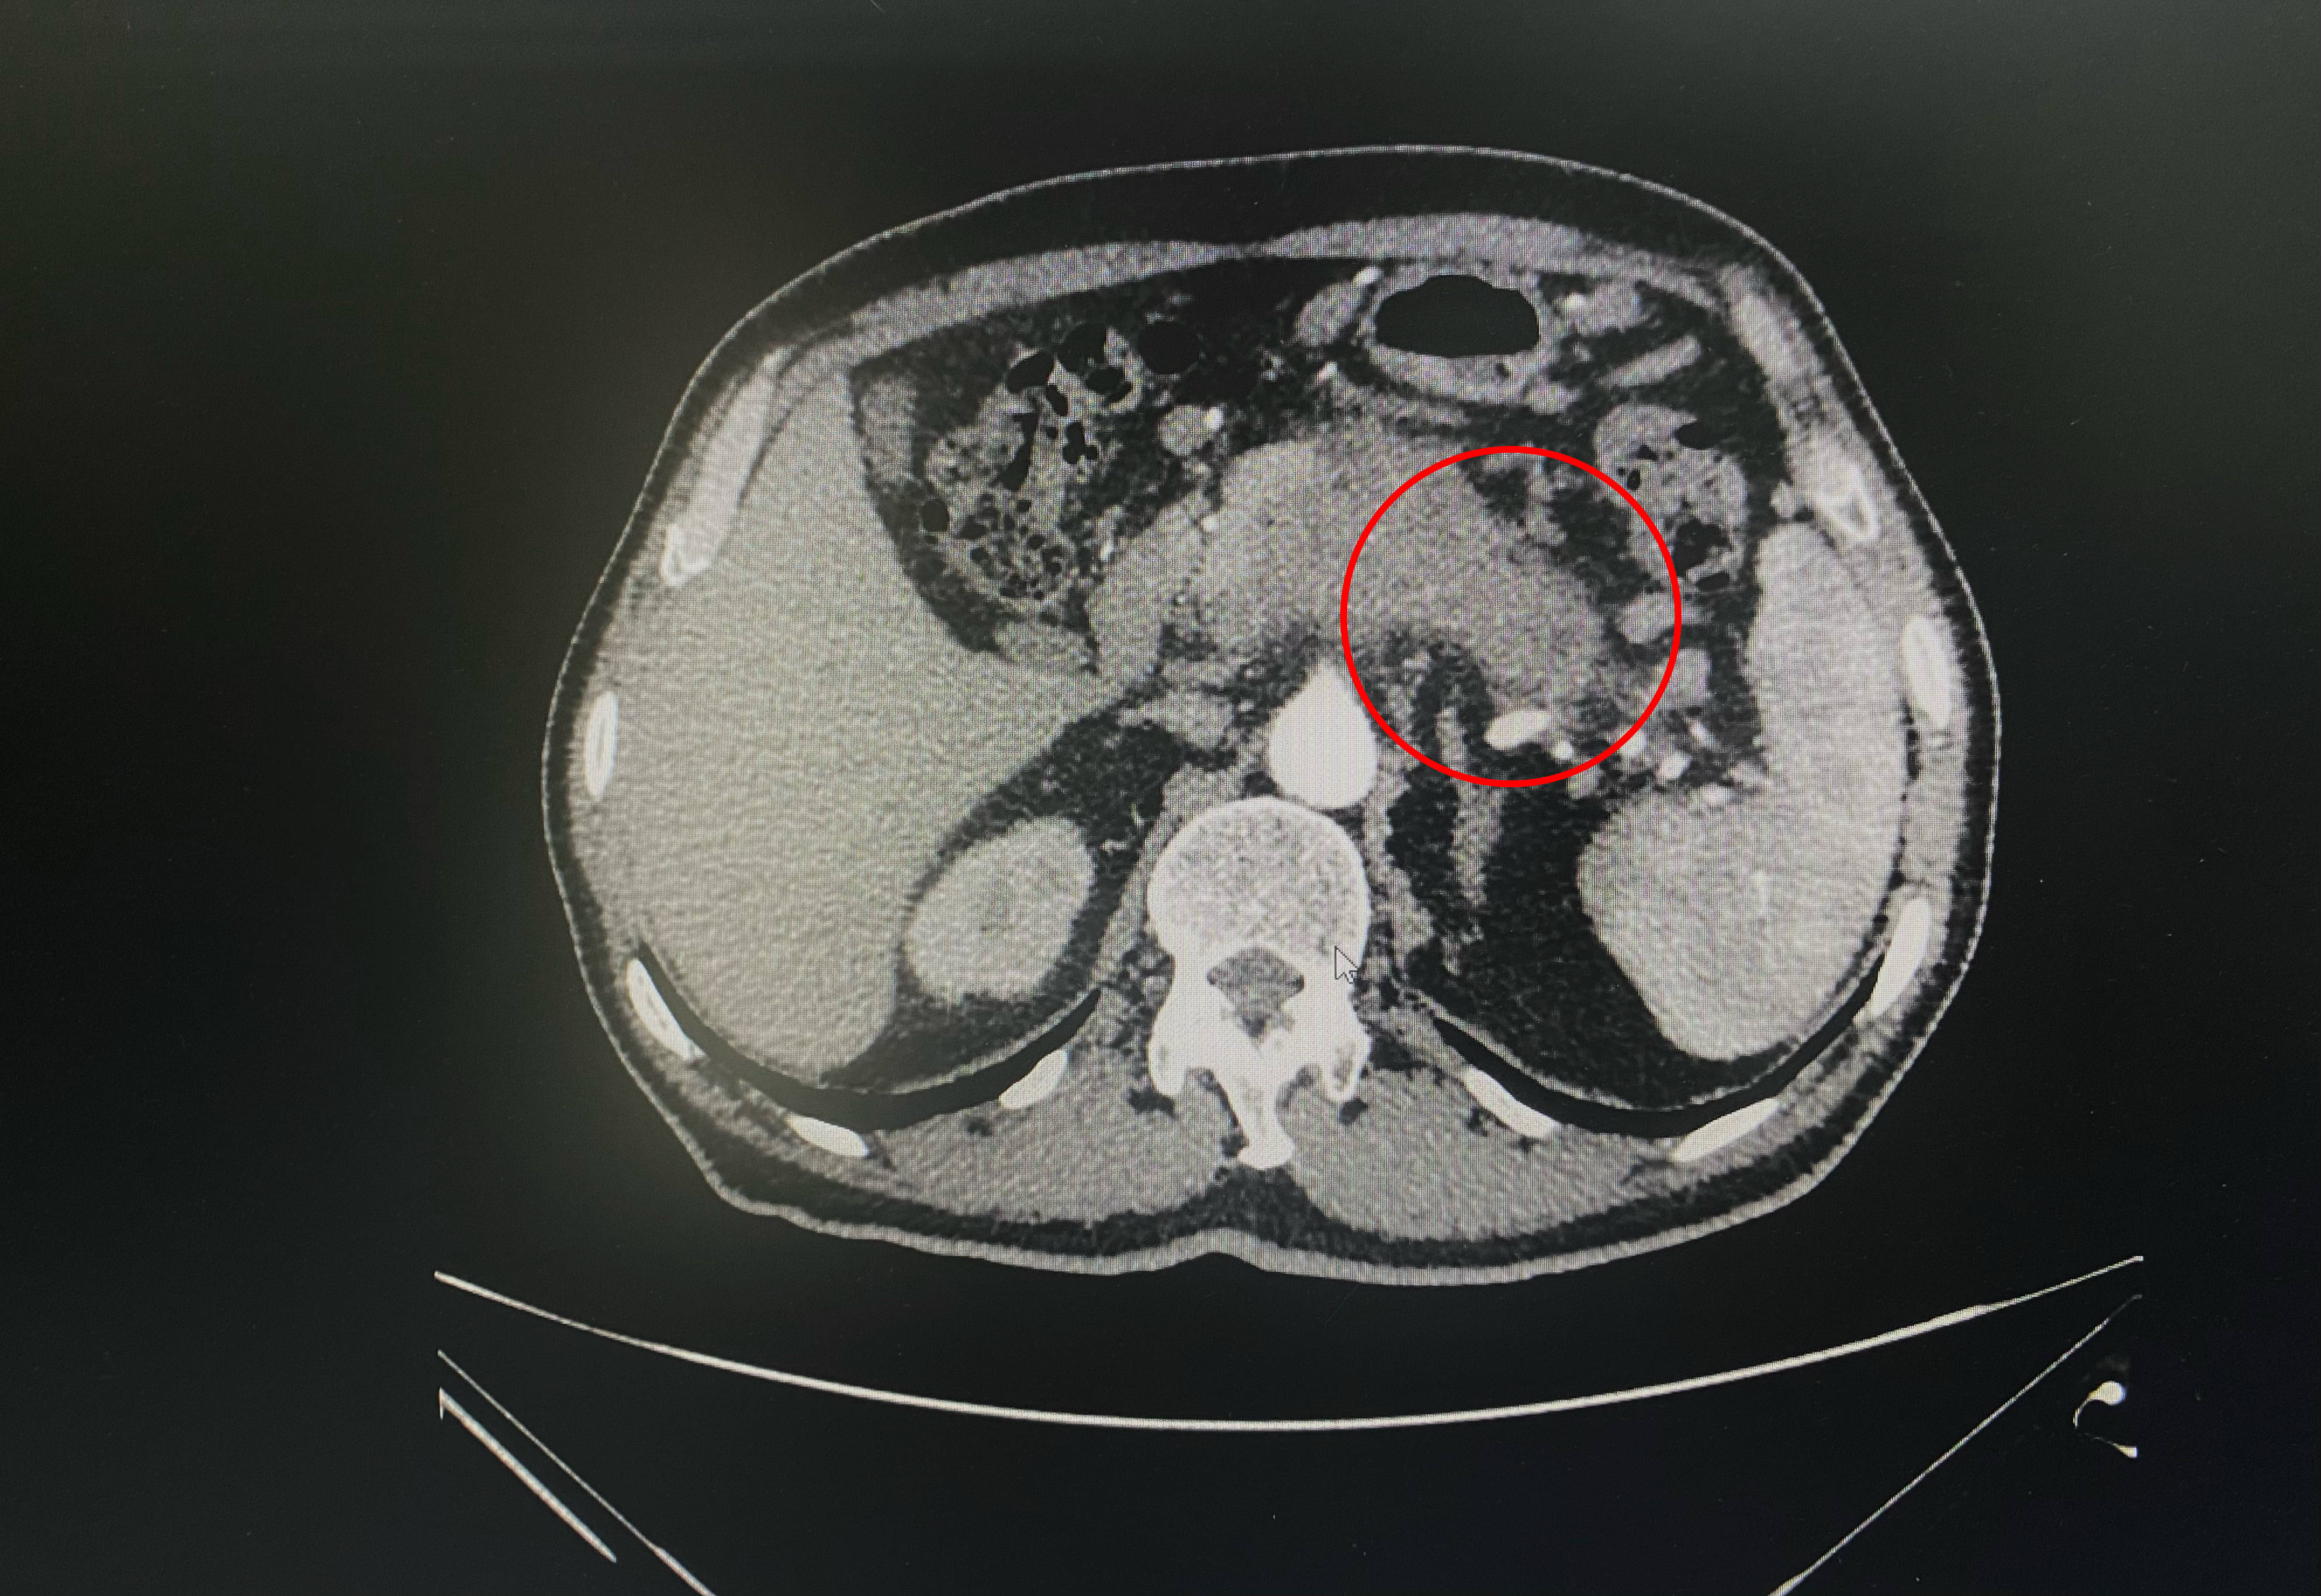 胰尾癌晚期图片